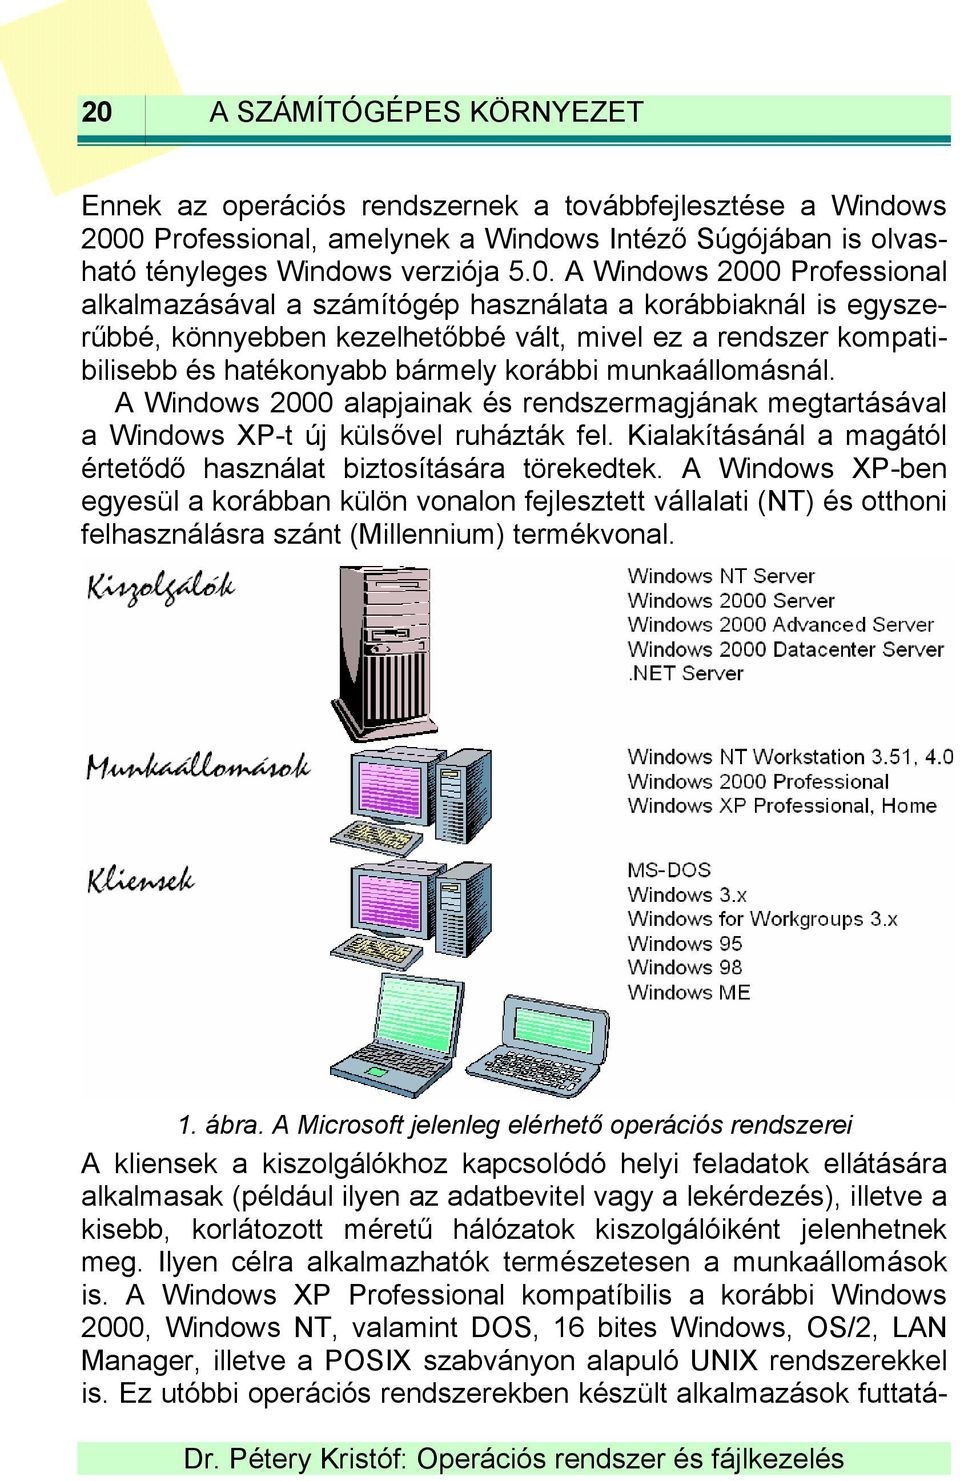 munkaállomásnál. A Windows 2000 alapjainak és rendszermagjának megtartásával a Windows XP-t új külsővel ruházták fel. Kialakításánál a magától értetődő használat biztosítására törekedtek.